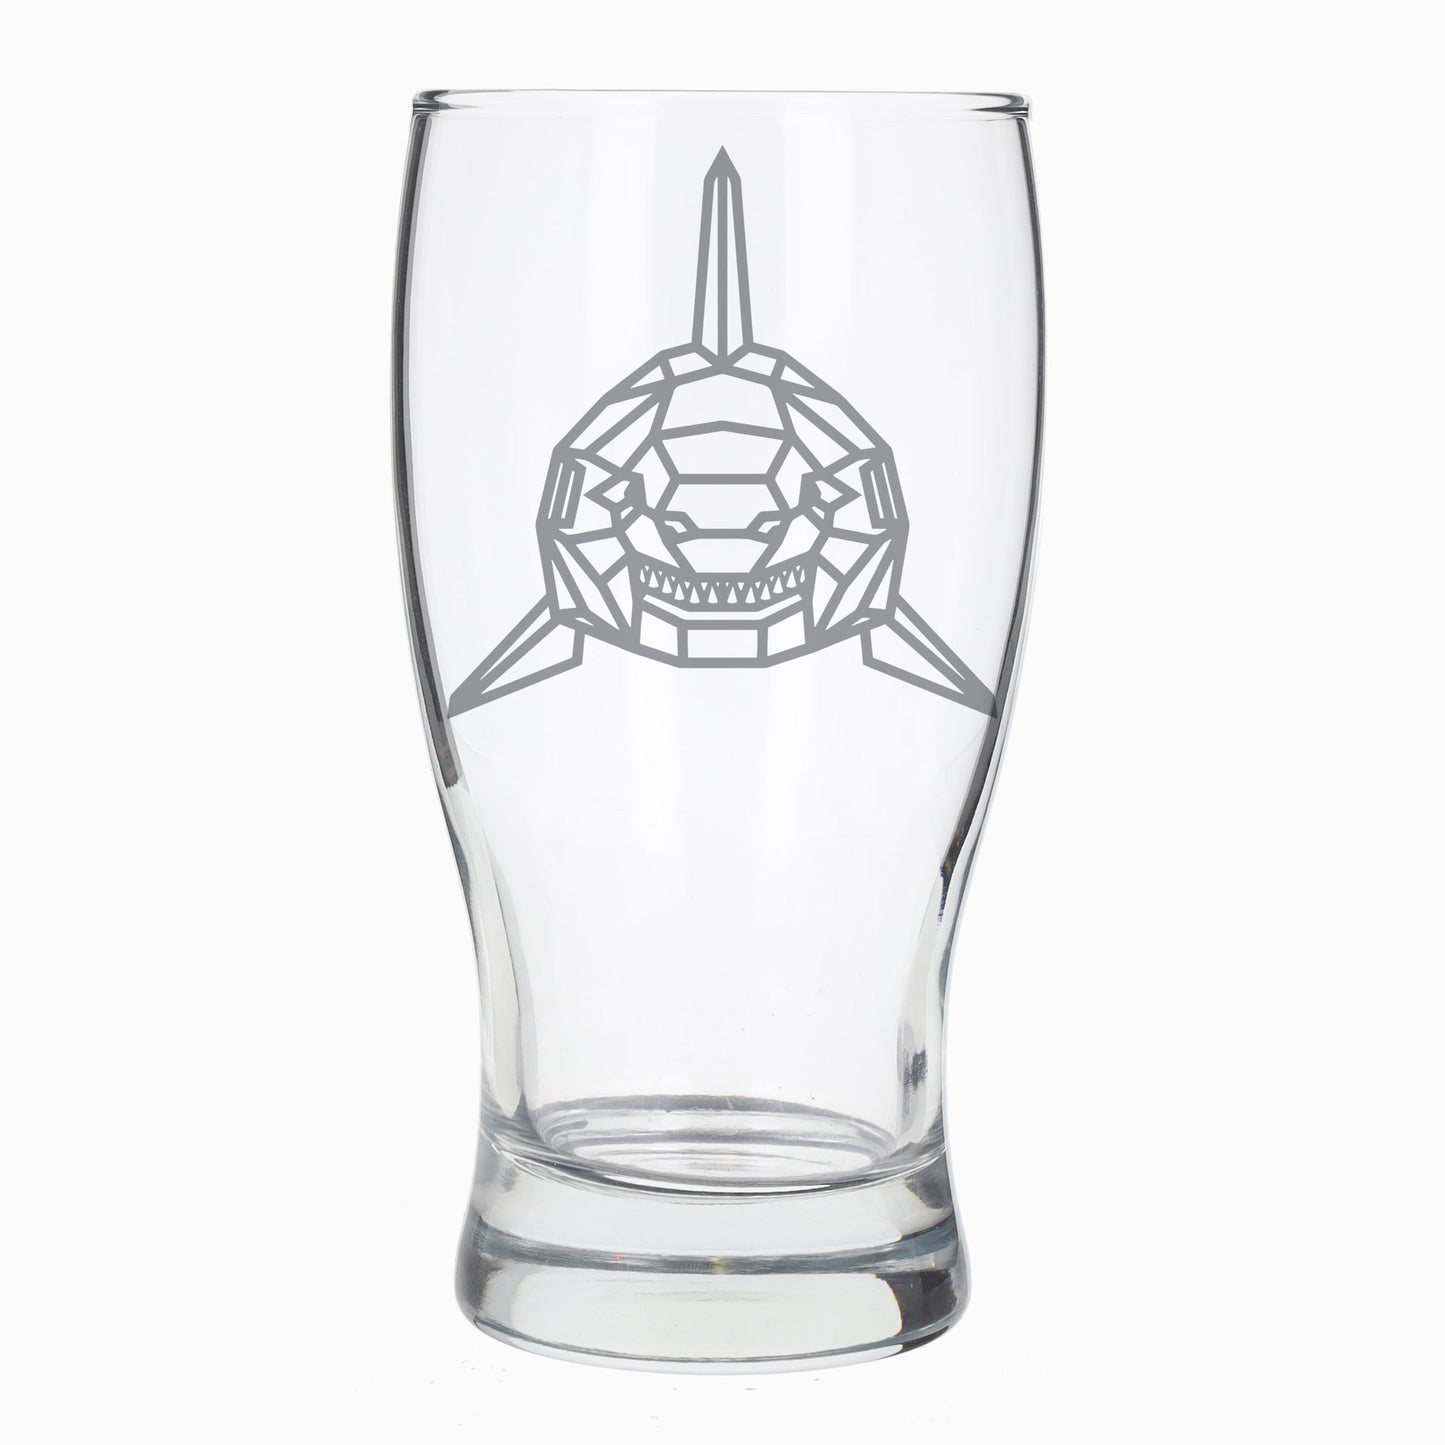 Shark Engraved Beer Pint Glass  - Always Looking Good -   